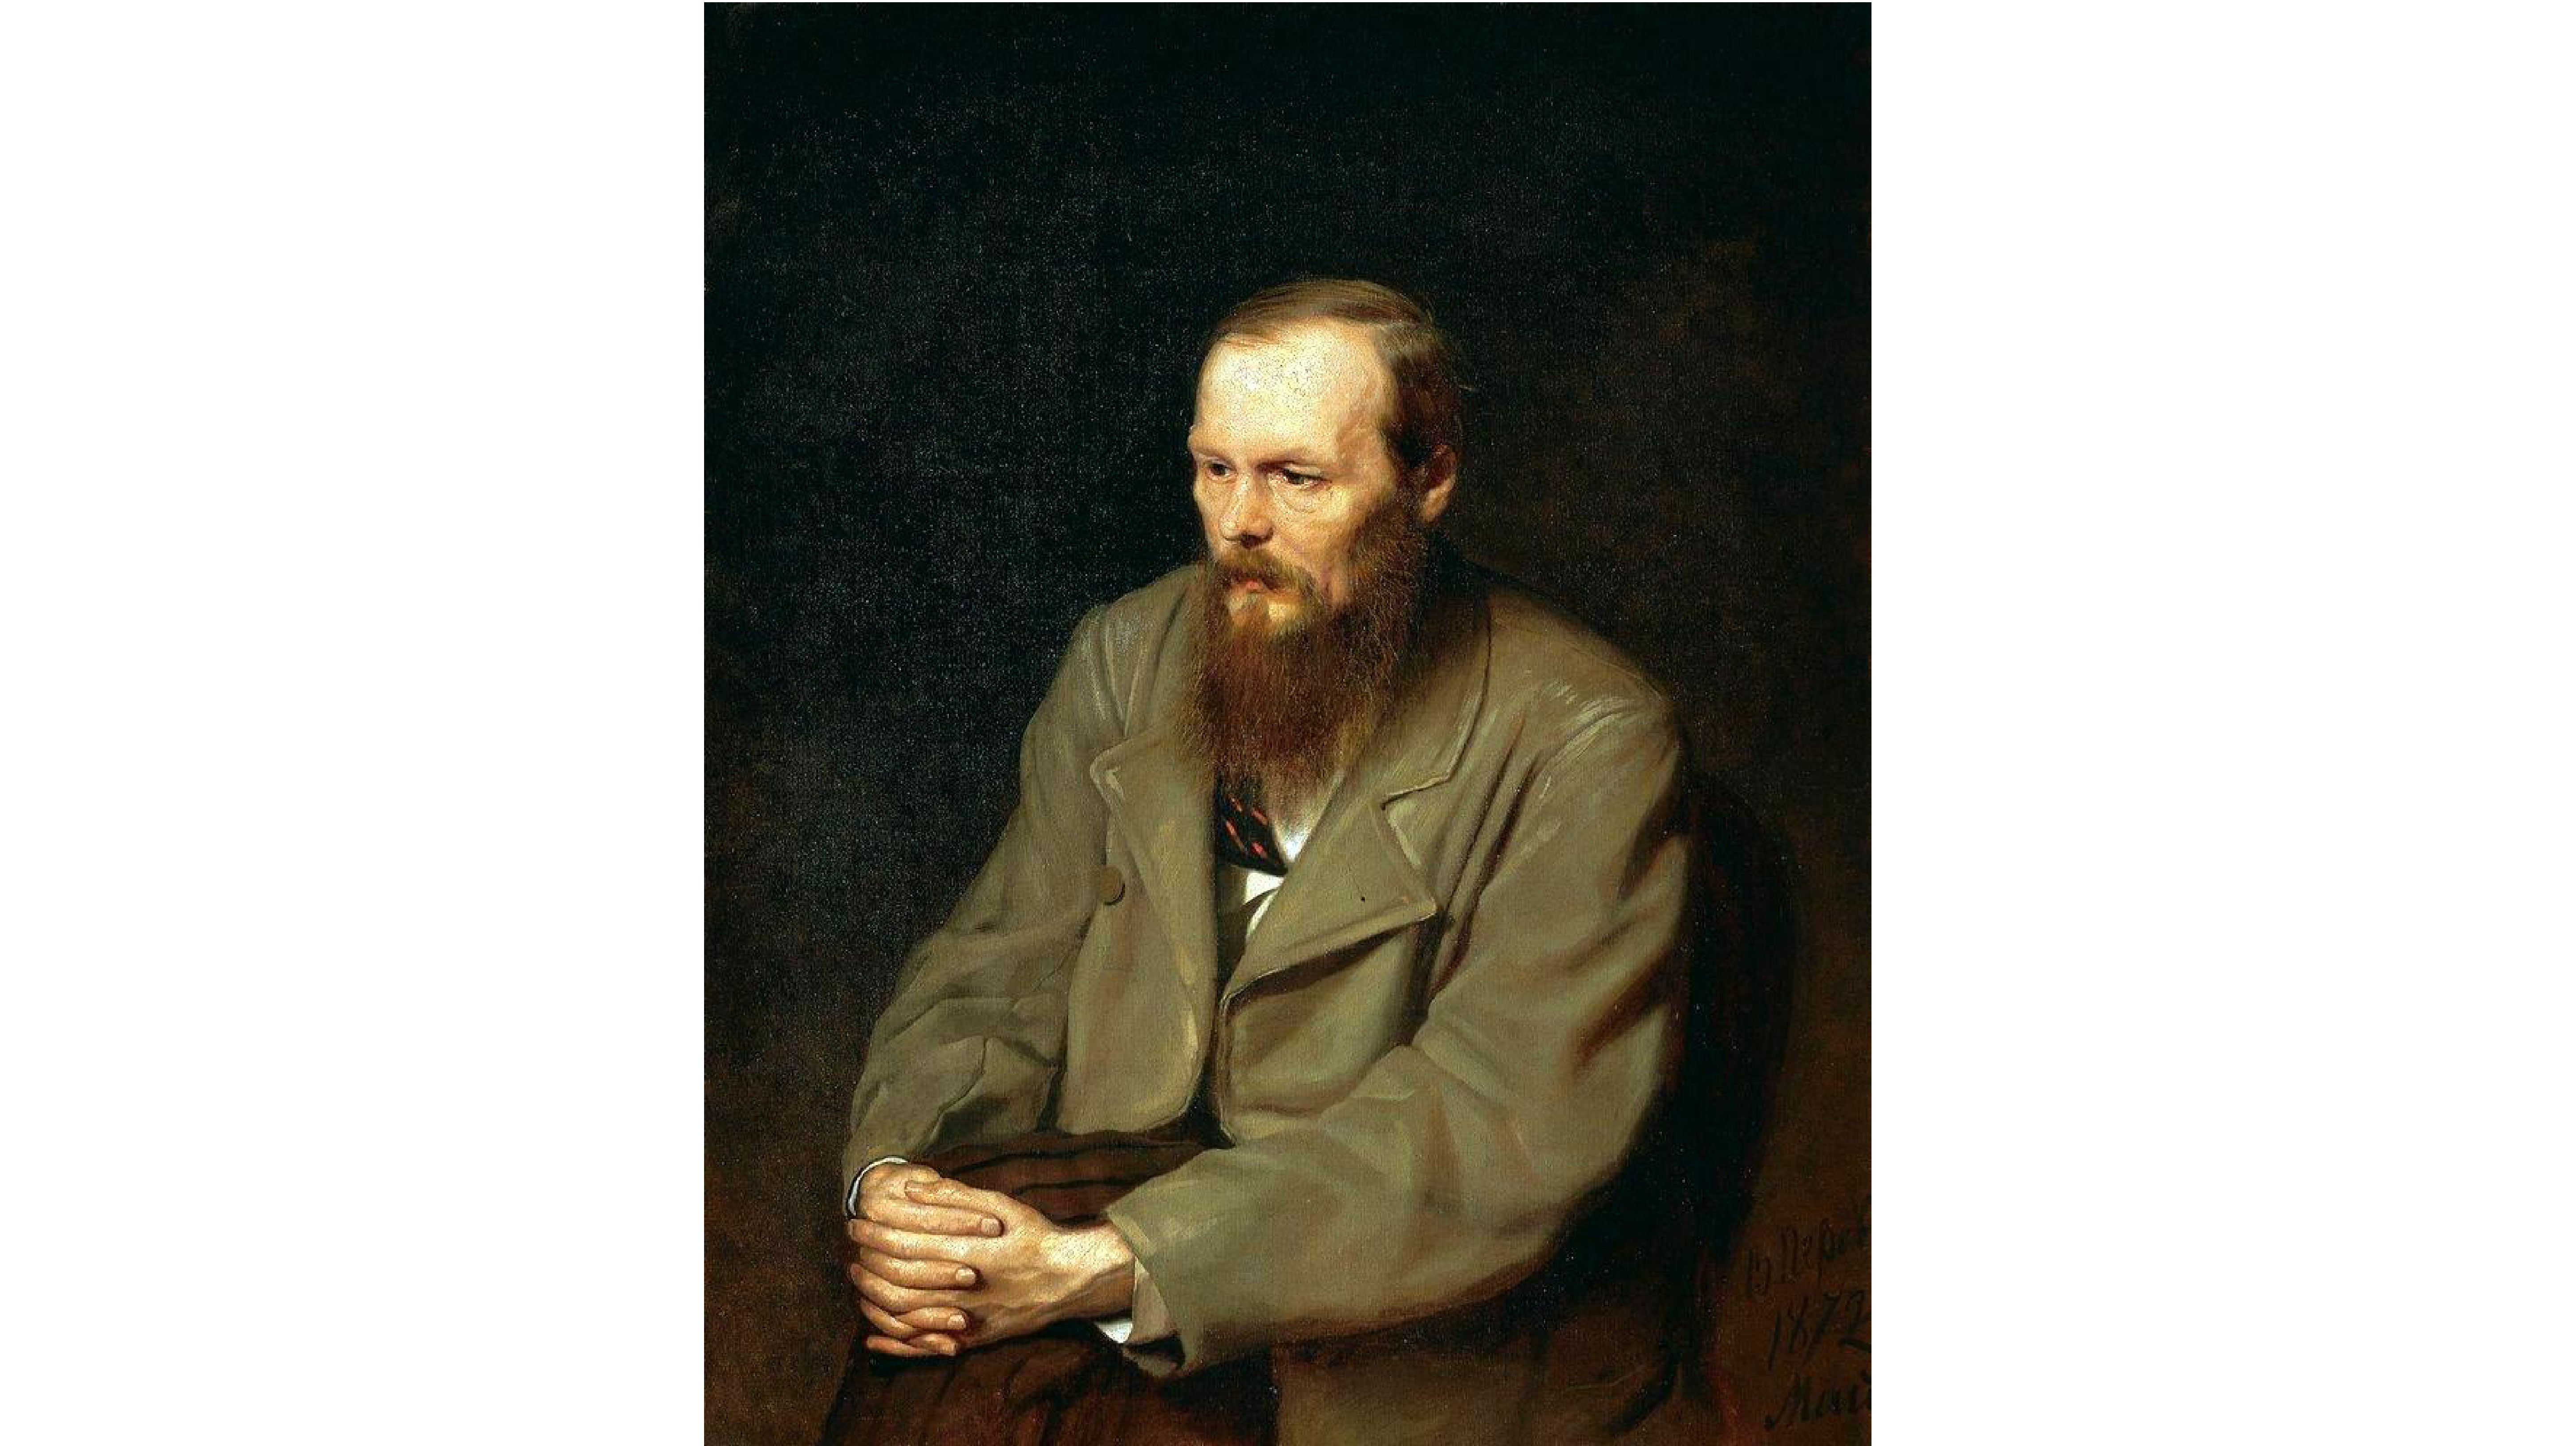 L’amante di Dostoevskij (seconda parte)